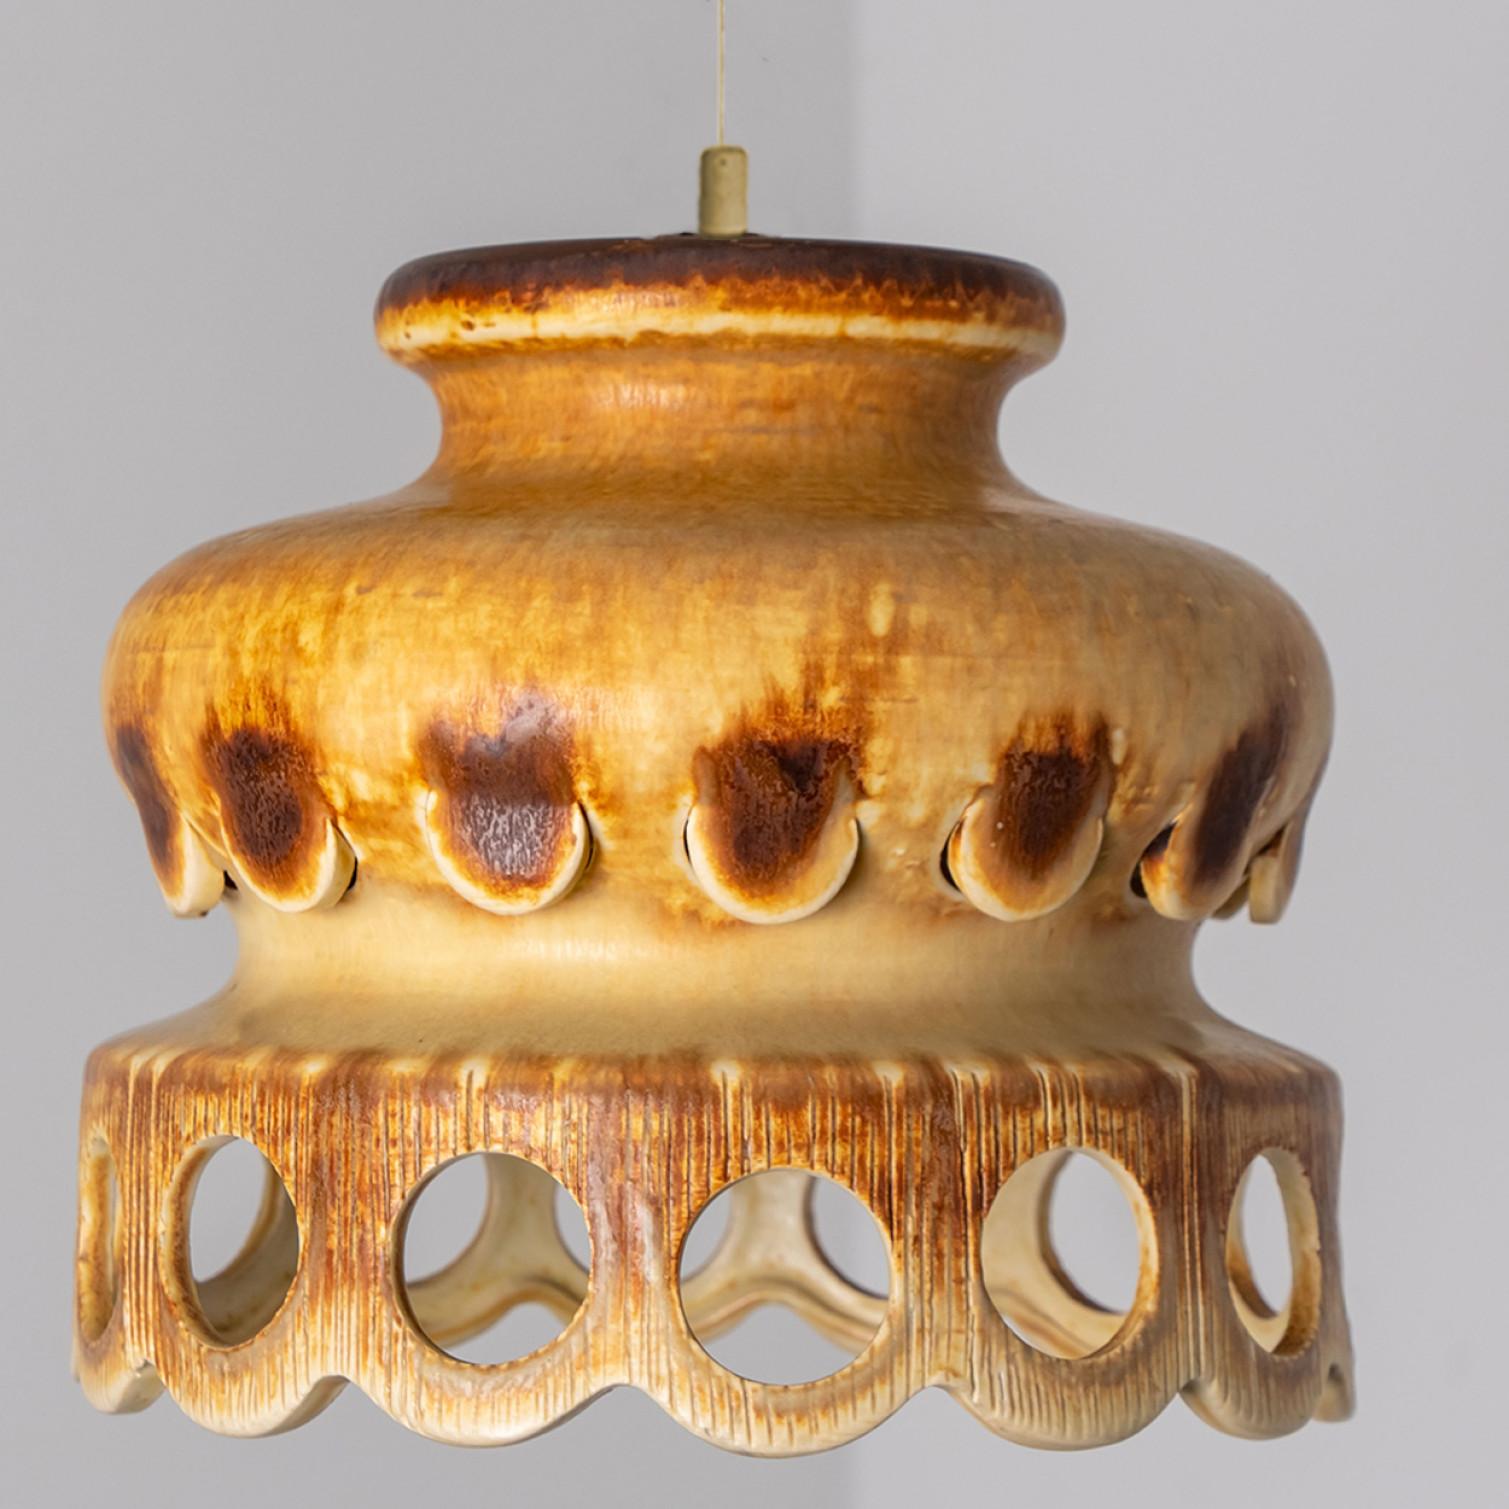 Wunderschöne runde Hängelampe mit einer halbrunden Form, hergestellt aus reichhaltiger terrafarbener brauner Keramik, hergestellt in den 1970er Jahren in Dänemark. Wir haben auch eine Vielzahl von einzigartigen farbigen Keramik-Licht-Sets und